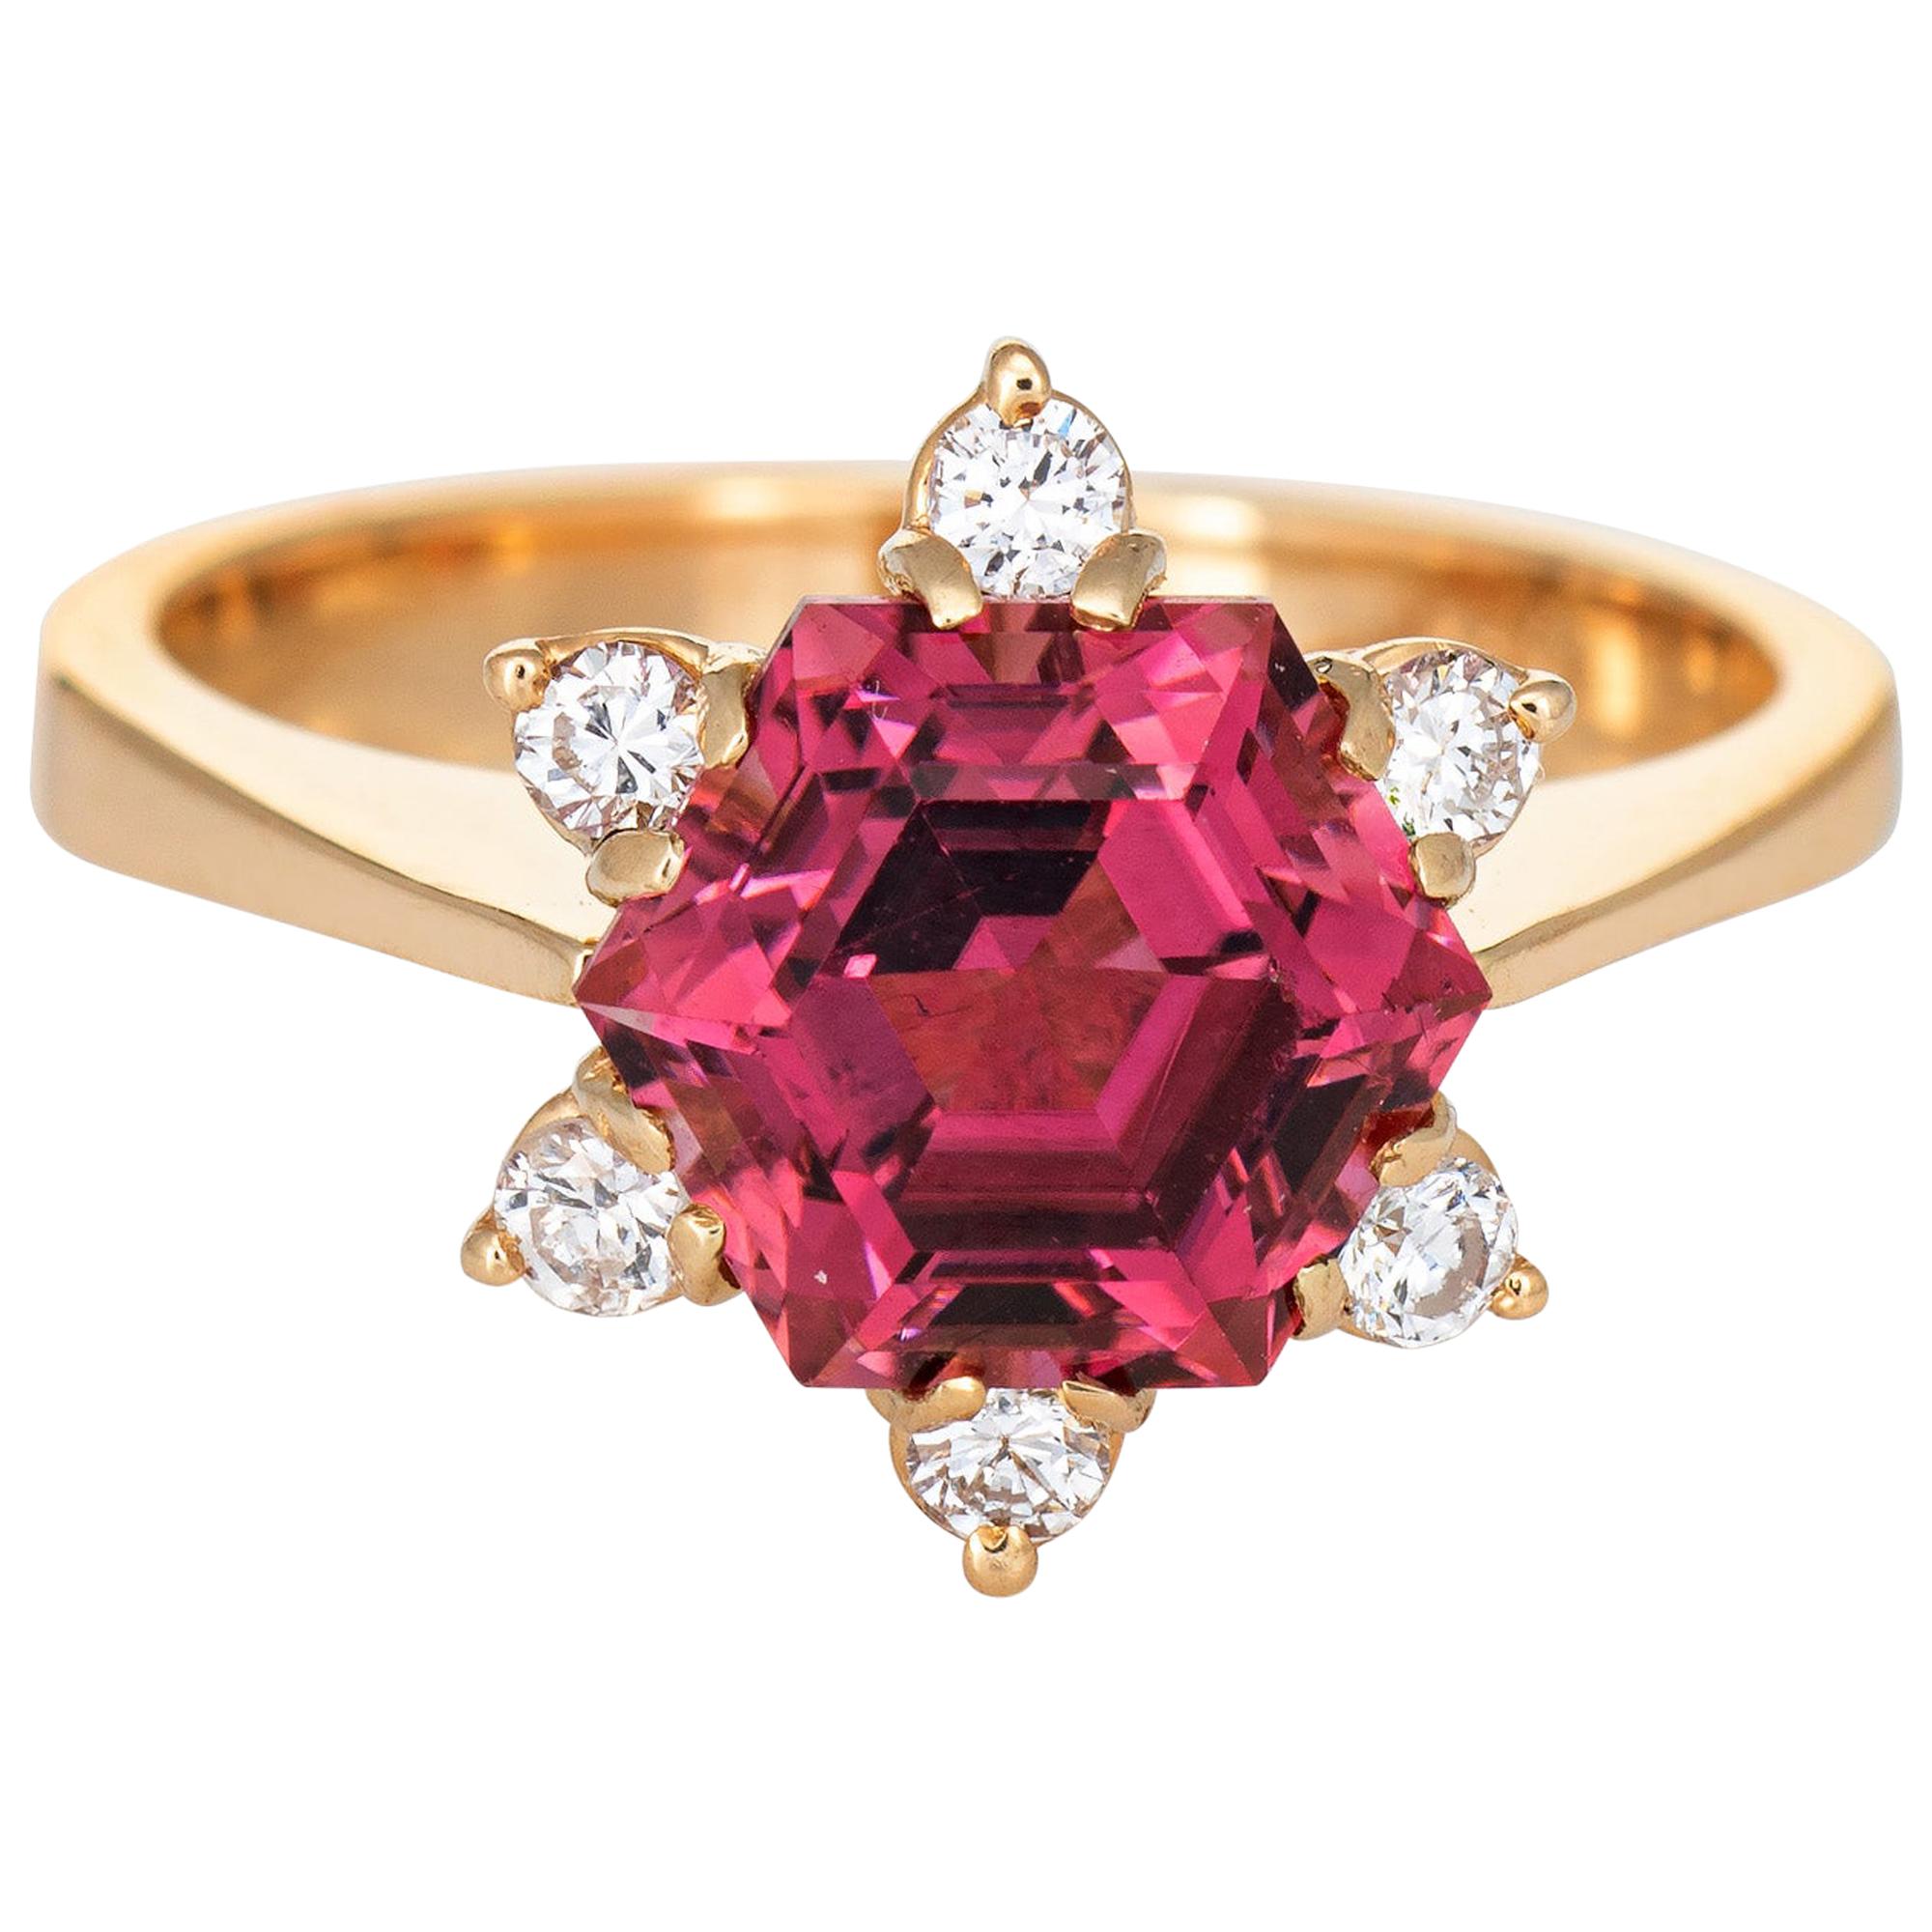 Hexagonal Pink Tourmaline Diamond Ring Vintage 18 Karat Gold Estate Jewelry